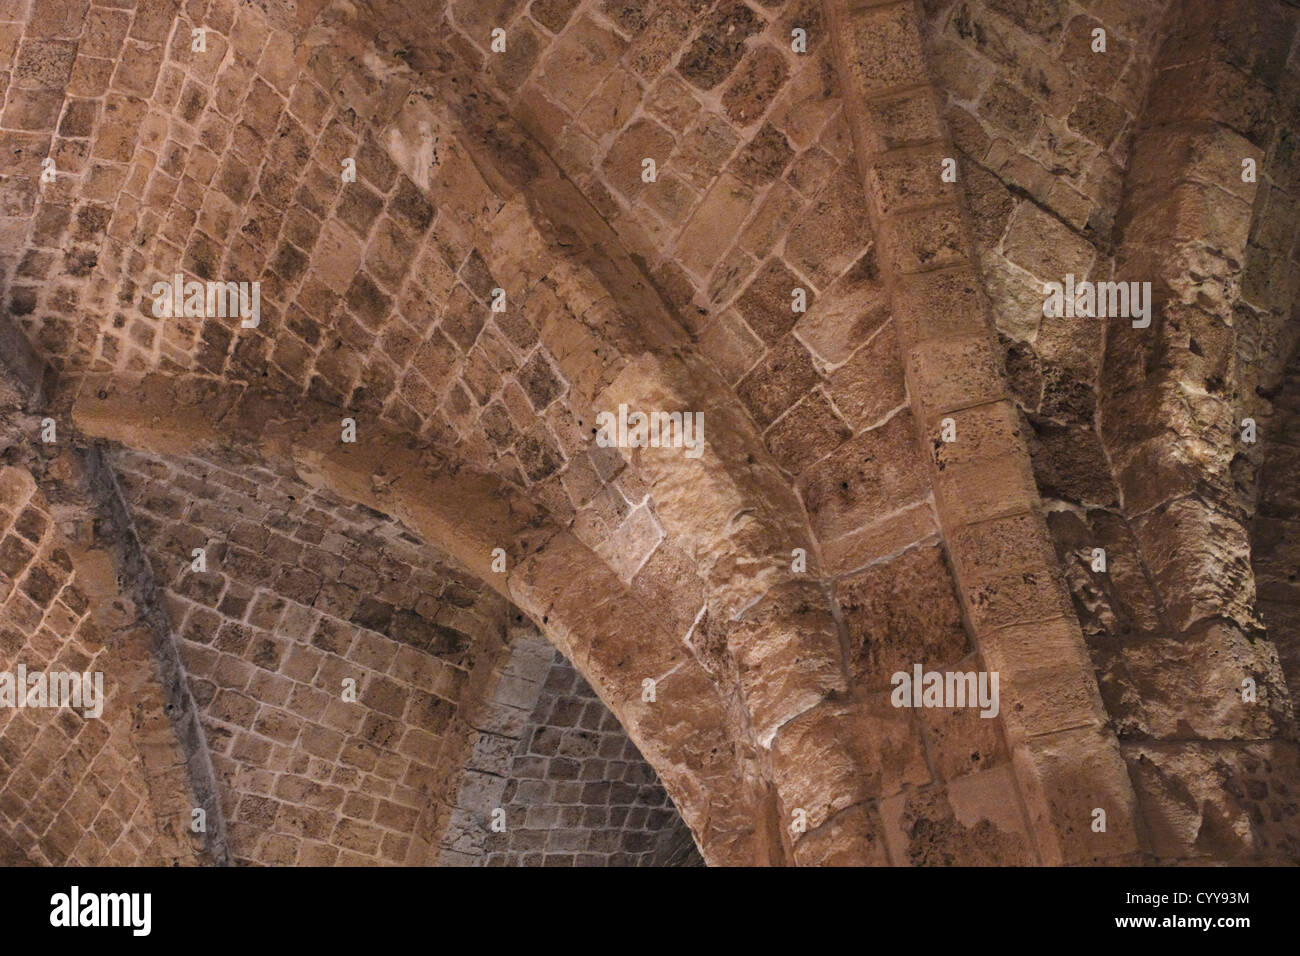 Les voûtes du plafond de l'ancienne place forte des Croisés Acre, Israël Banque D'Images